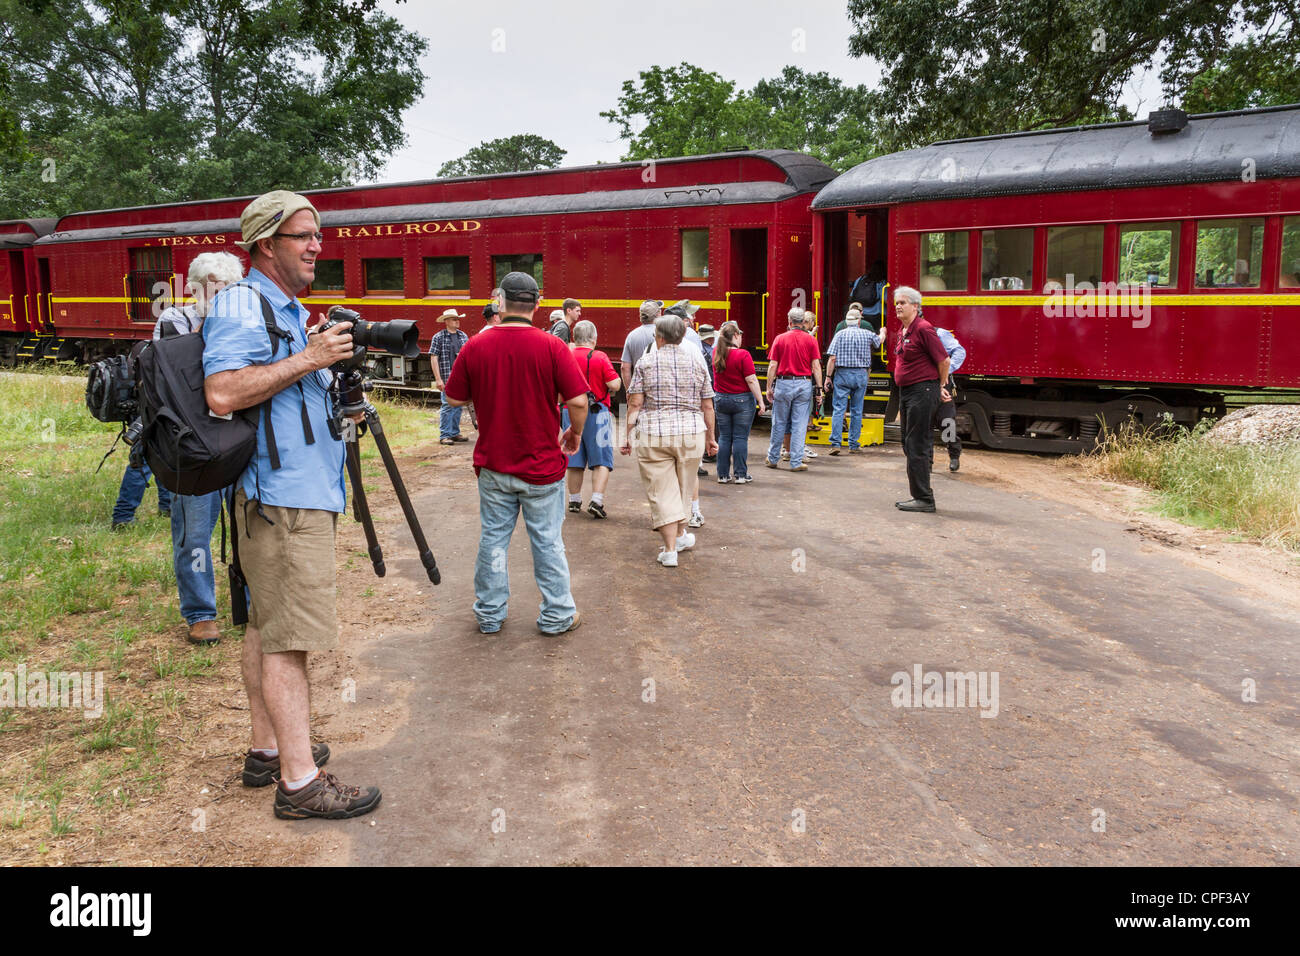 Fotografen beim 2012 Railfest Fotoexkursion Wochenende in der 'Texas State Railroad' Dampflokomotive Bahnfahrt in der Nähe von Rusk, Texas. Stockfoto